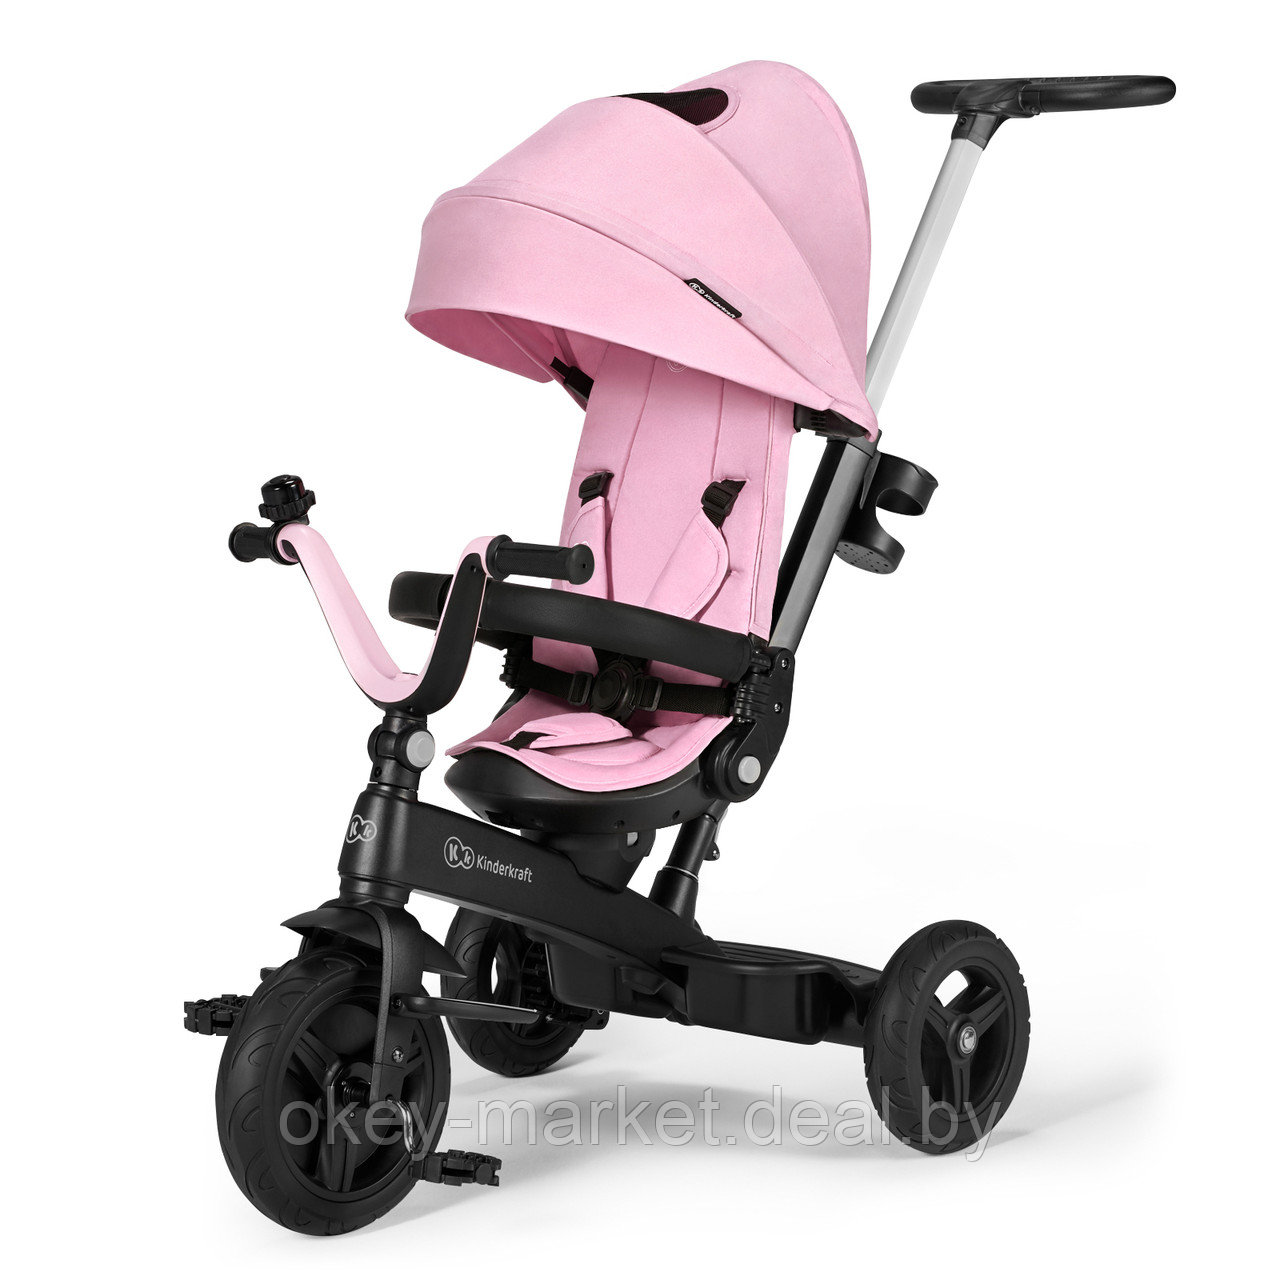 Детский трехколесный велосипед Kinderkraft Twipper Pink